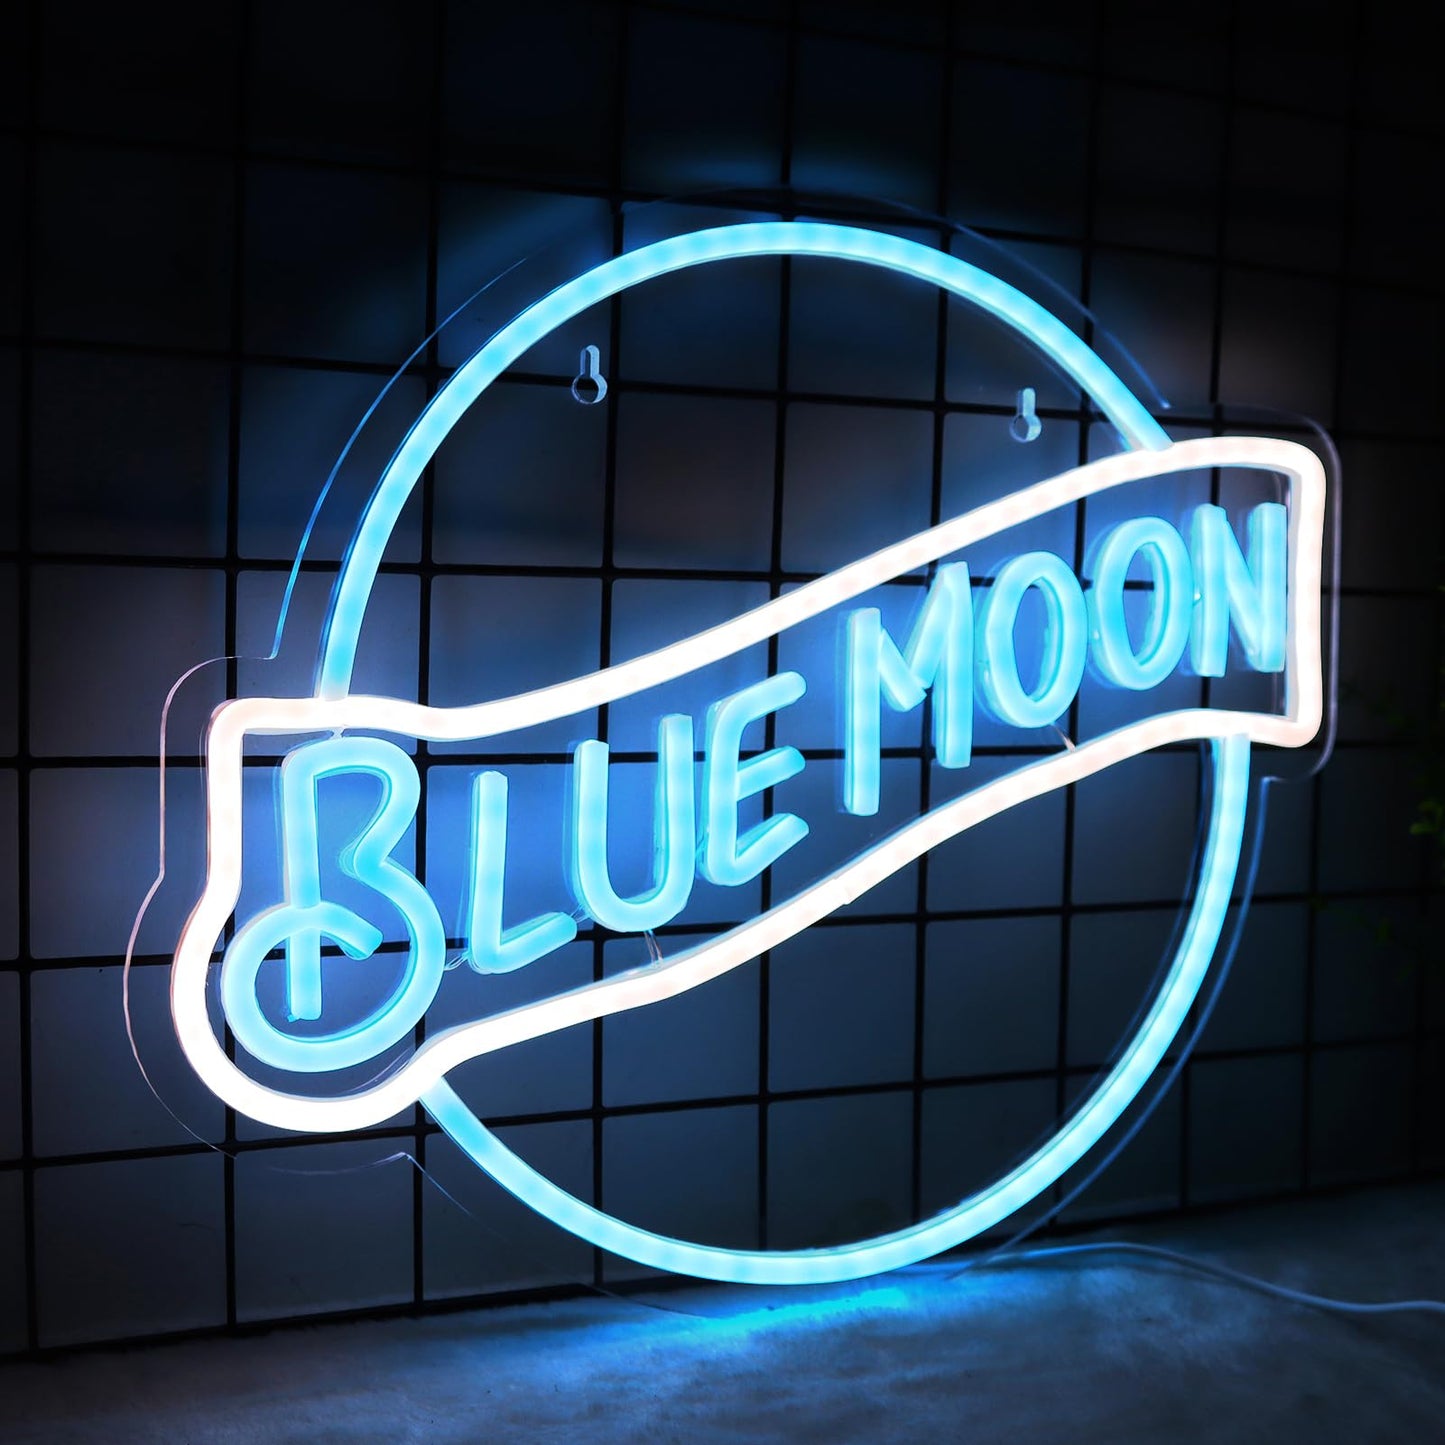 Blue Moon Neon Sign Beer Neon Sign